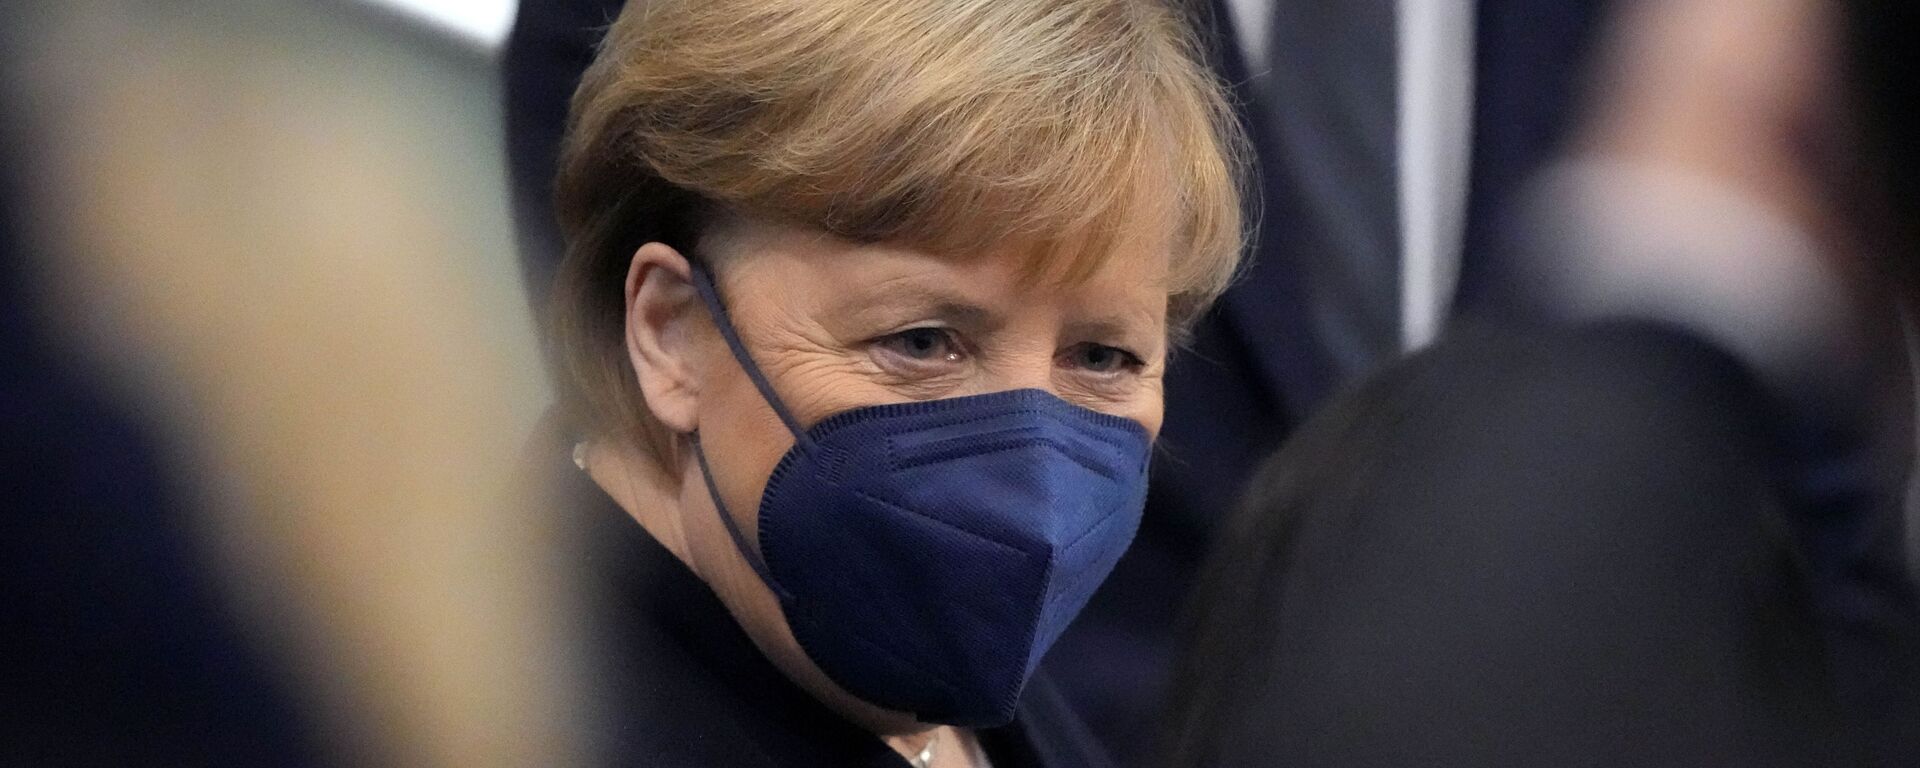 Buvusi Vokietijos kanclerė Angela Merkel - Sputnik Lietuva, 1920, 14.12.2021